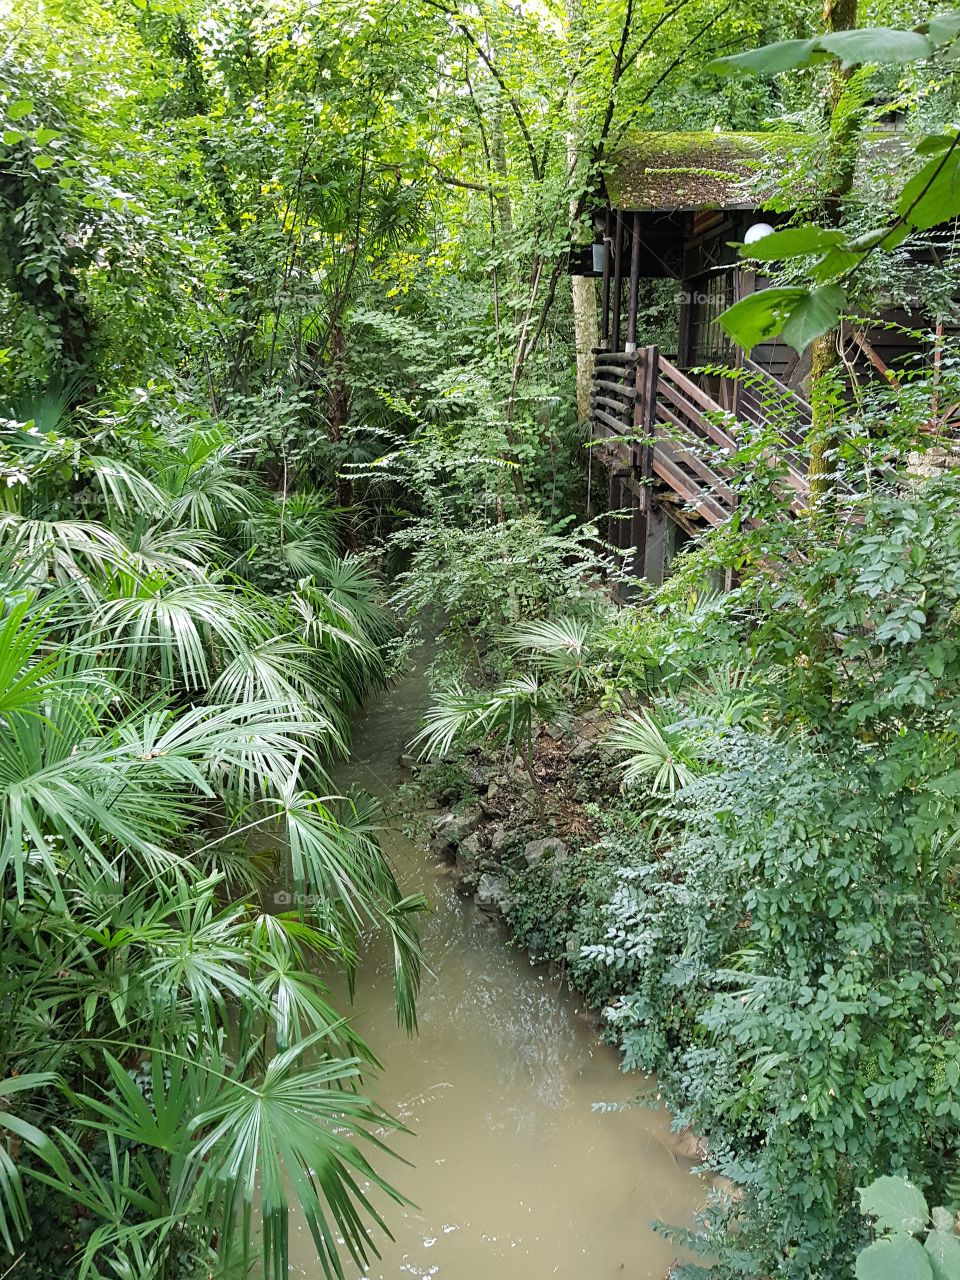 Footbridge in the jungle